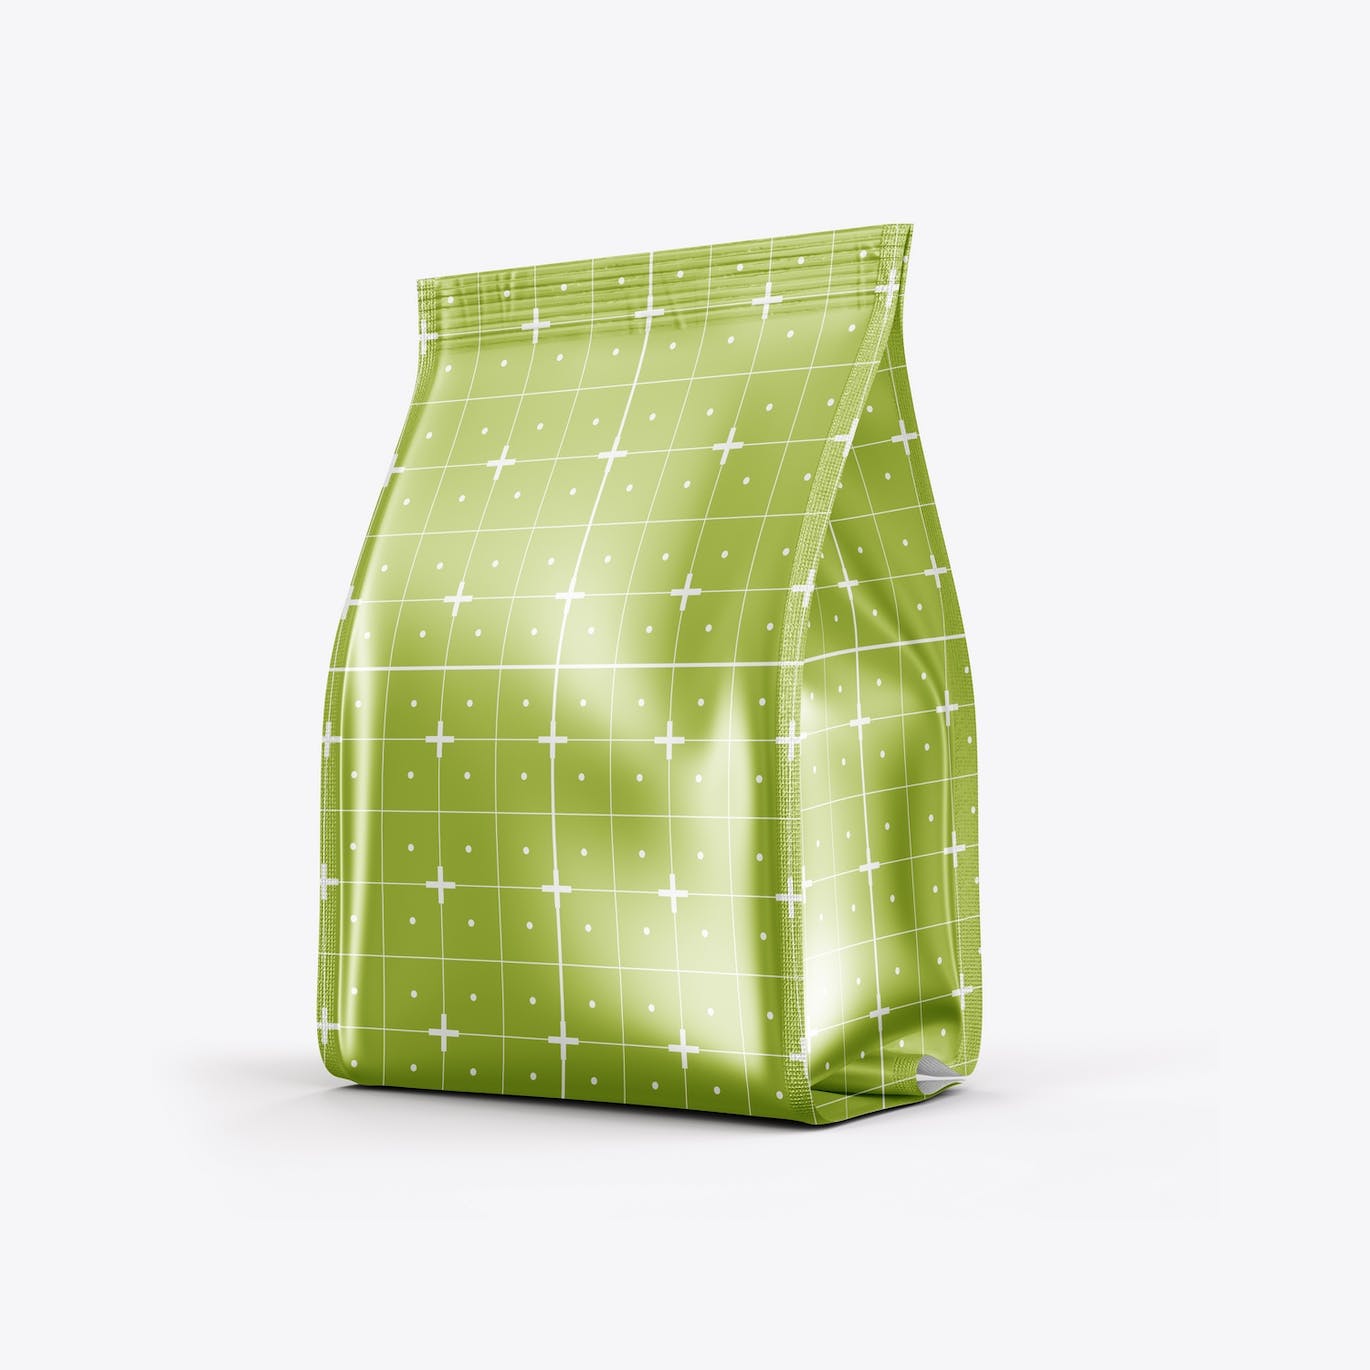 金属纸咖啡袋包装样机图 Pack Metallic Paper Coffee Bag Mockup 样机素材 第7张